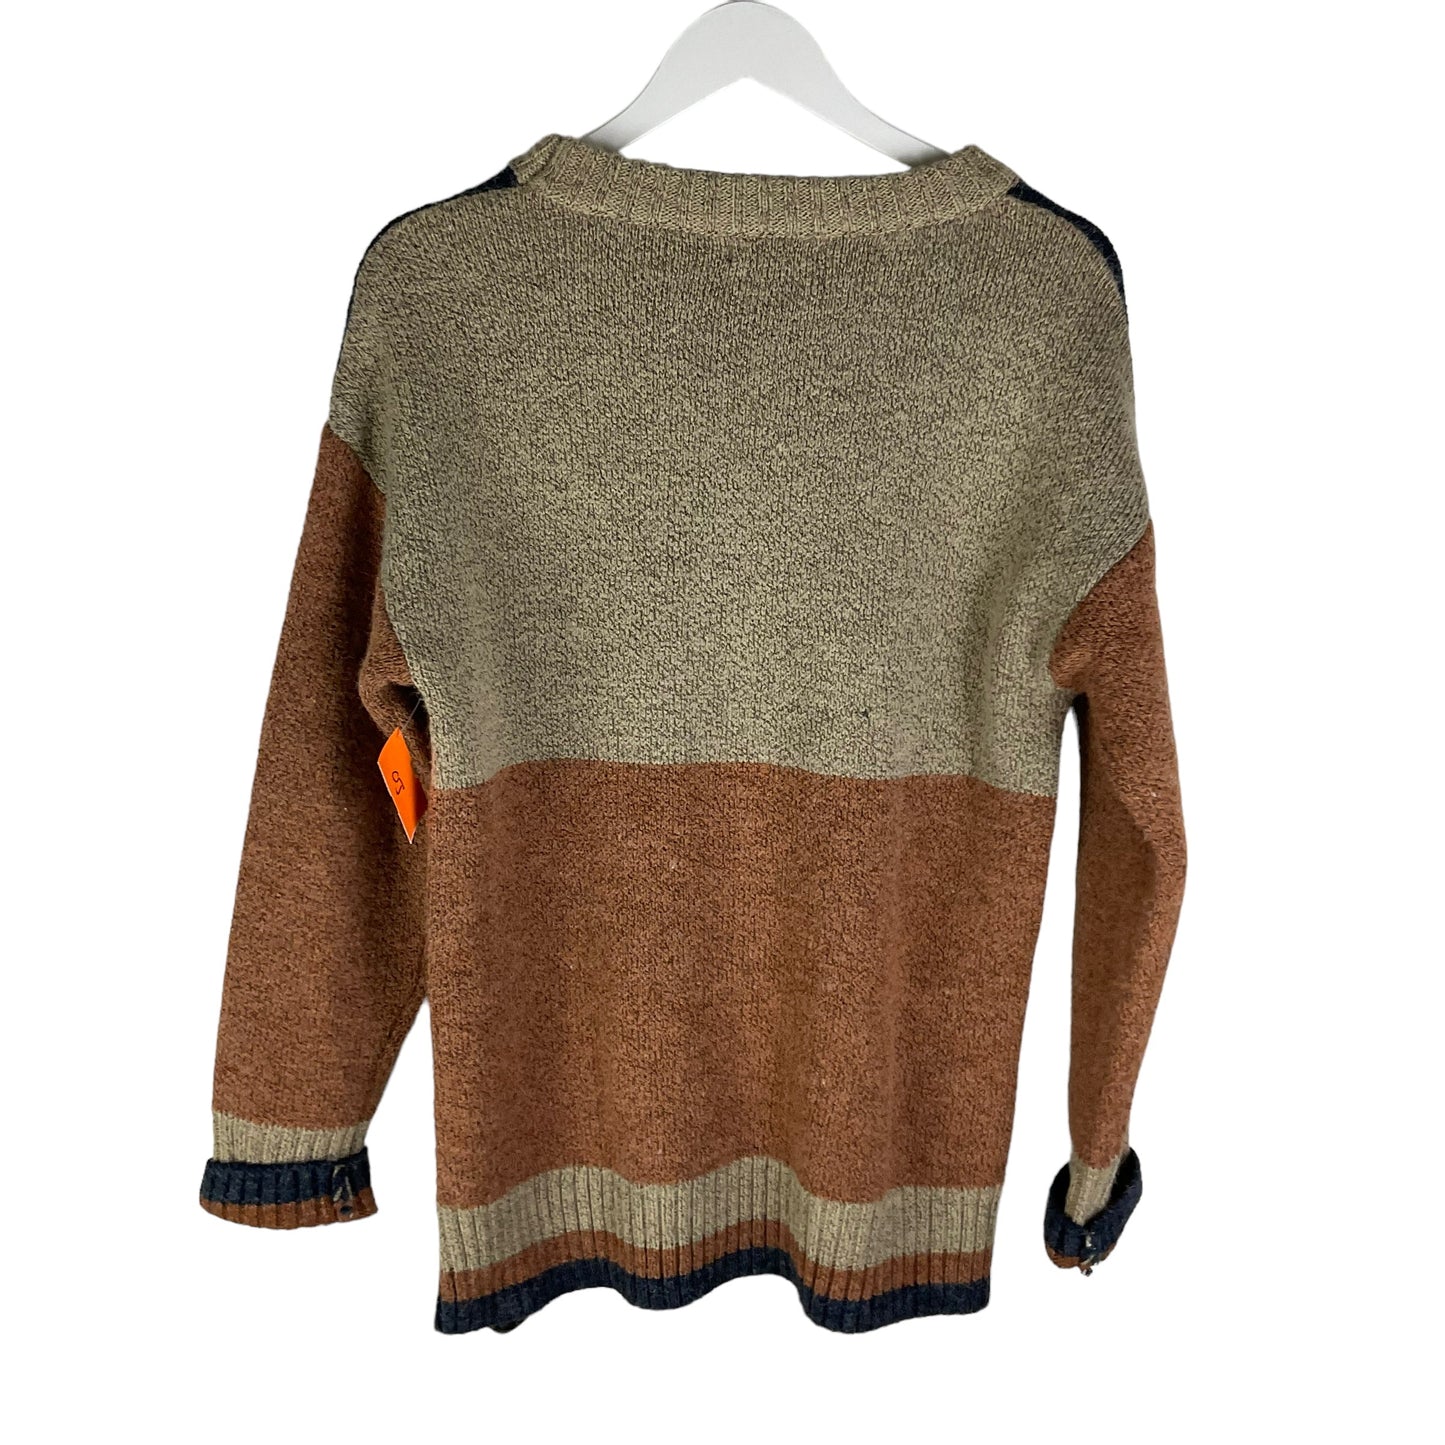 Sweater By Promesa  Size: M